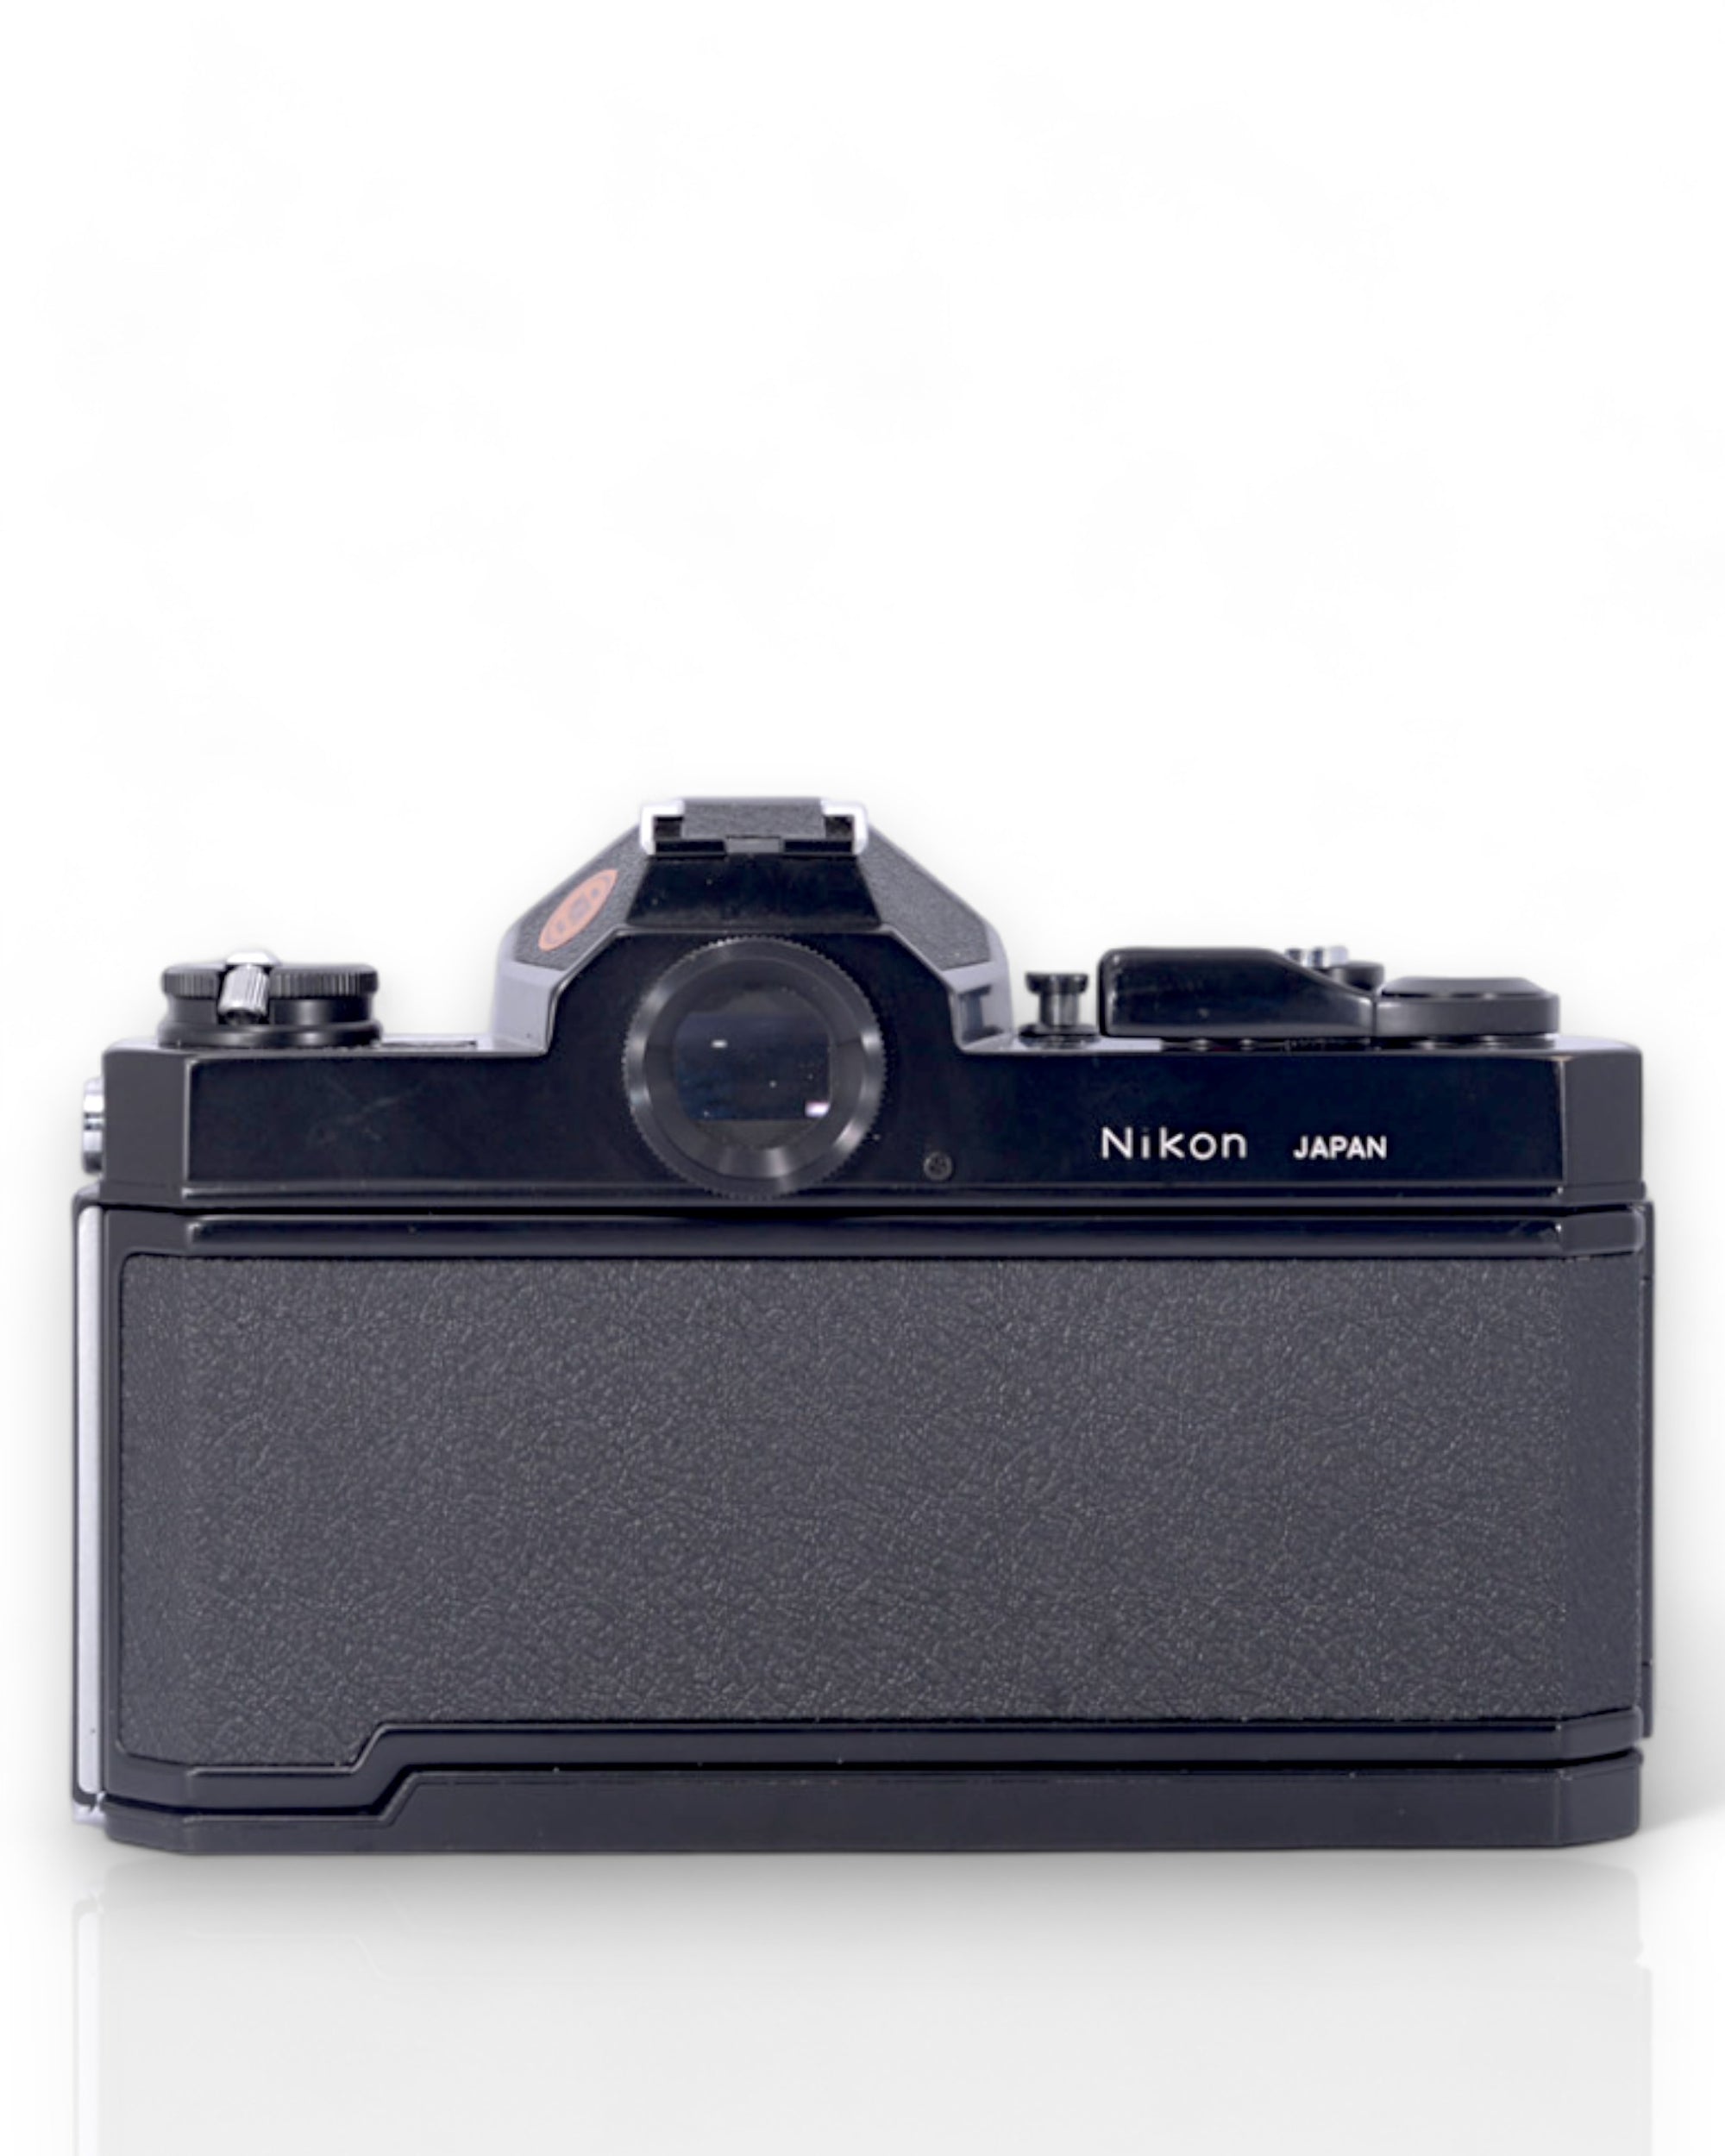 Nikon Nikkormat FT2 35mm SLR Film Camera with 50mm f2 Lens